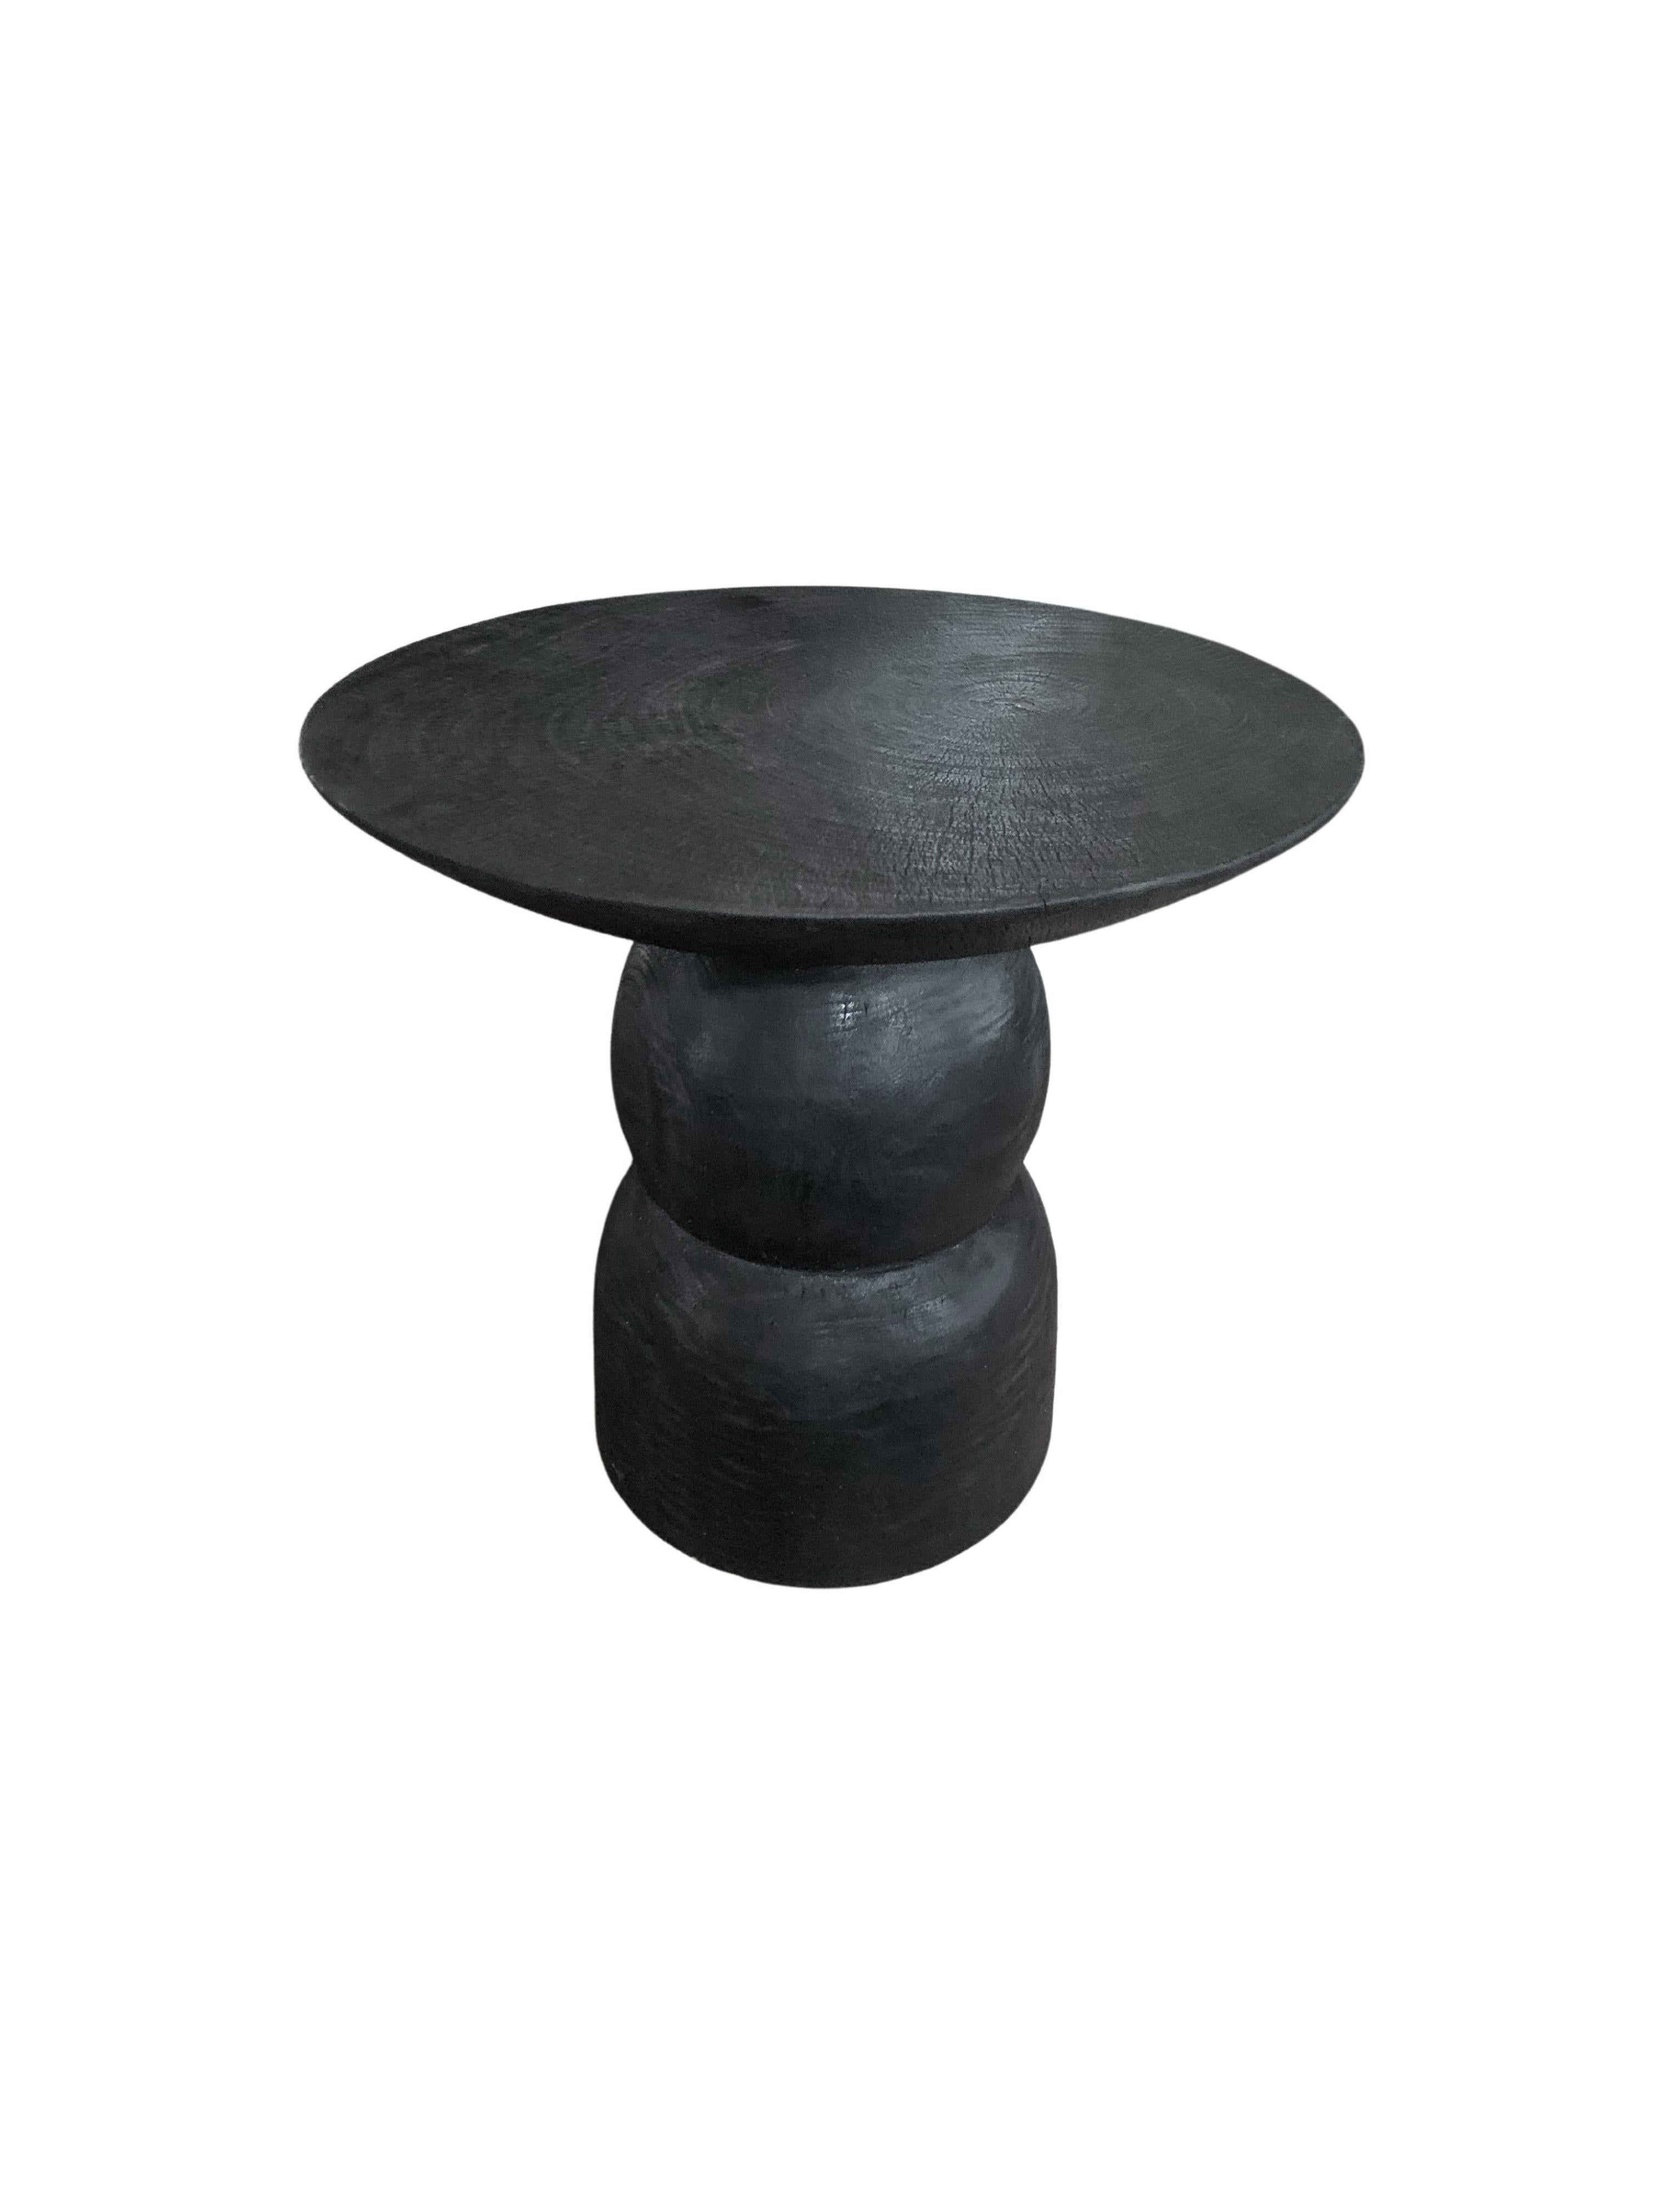 Une table d'appoint ronde merveilleusement organique. Son riche pigment noir a été obtenu en brûlant le bois trois fois. Son pigment neutre et sa subtile texture de bois en font un produit parfait pour tout espace. Une pièce unique, sculpturale et